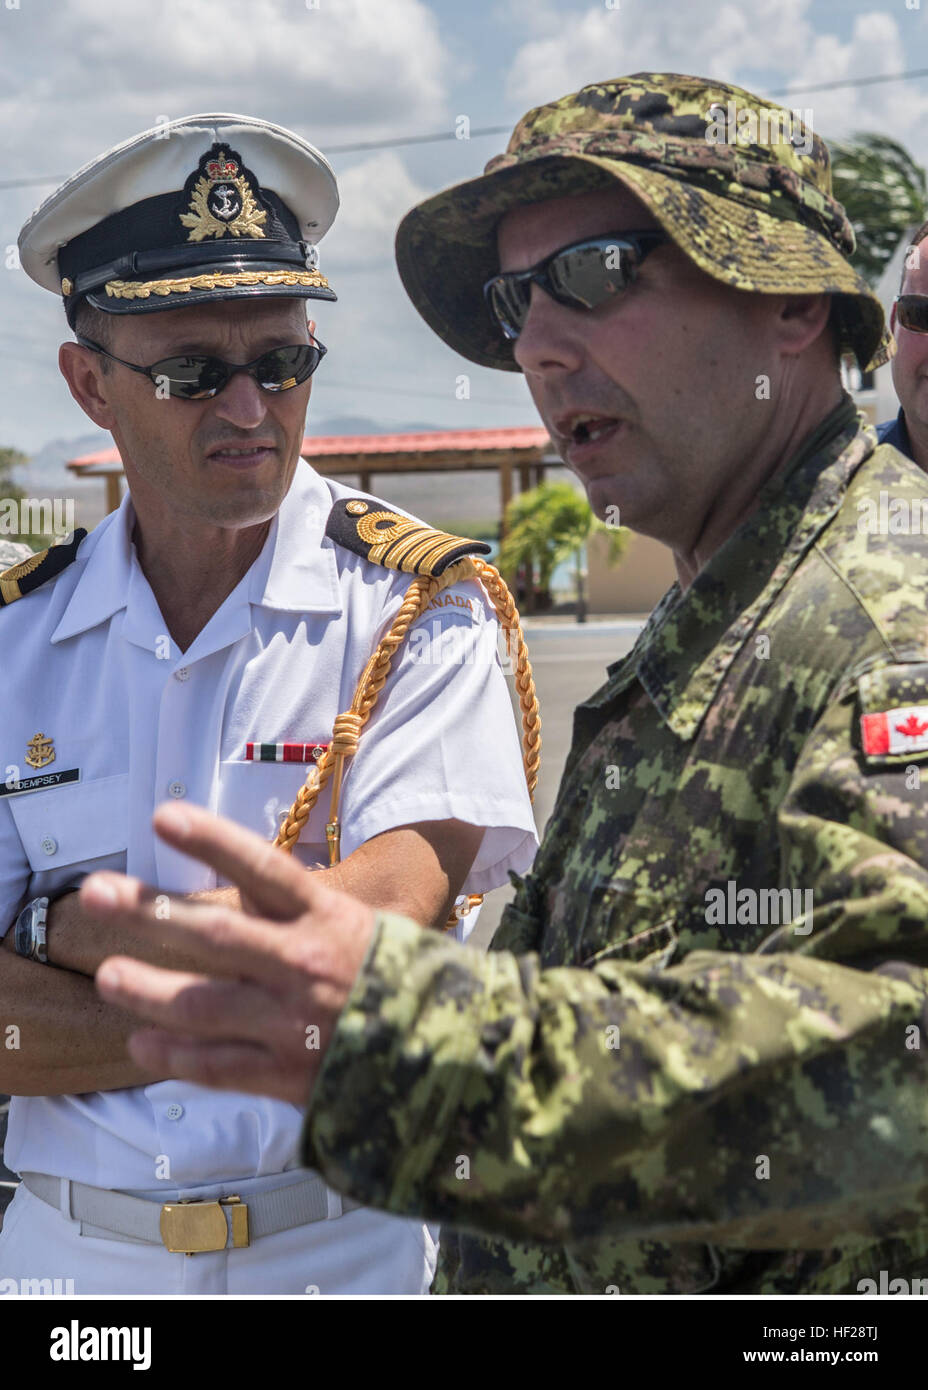 Le Capitaine Paul Dempsey, Attaché de défense du Canada pour la région, parle avec l'Adjudant-chef Cecil Elliott, Royal Canadian Regiment, à propos de la formation des événements qui ont lieu au cours de l'exercice Tradewinds 2014, à bord de la base navale de République Dominicaine, Las Calderas situé près de Bani, la République dominicaine, le 23 juin 2014. Le capitaine Dempsey a visité la base navale et a eu l'occasion d'observer une partie de la formation évolutions intervenant dans le cadre de la phase II de l'exercice. La Phase II de Tradewinds 2014 est surtout un exercice d'entraînement sur le terrain au sol eu lieu du 16 au 25 juin. Tradewinds 2014 est une co Banque D'Images